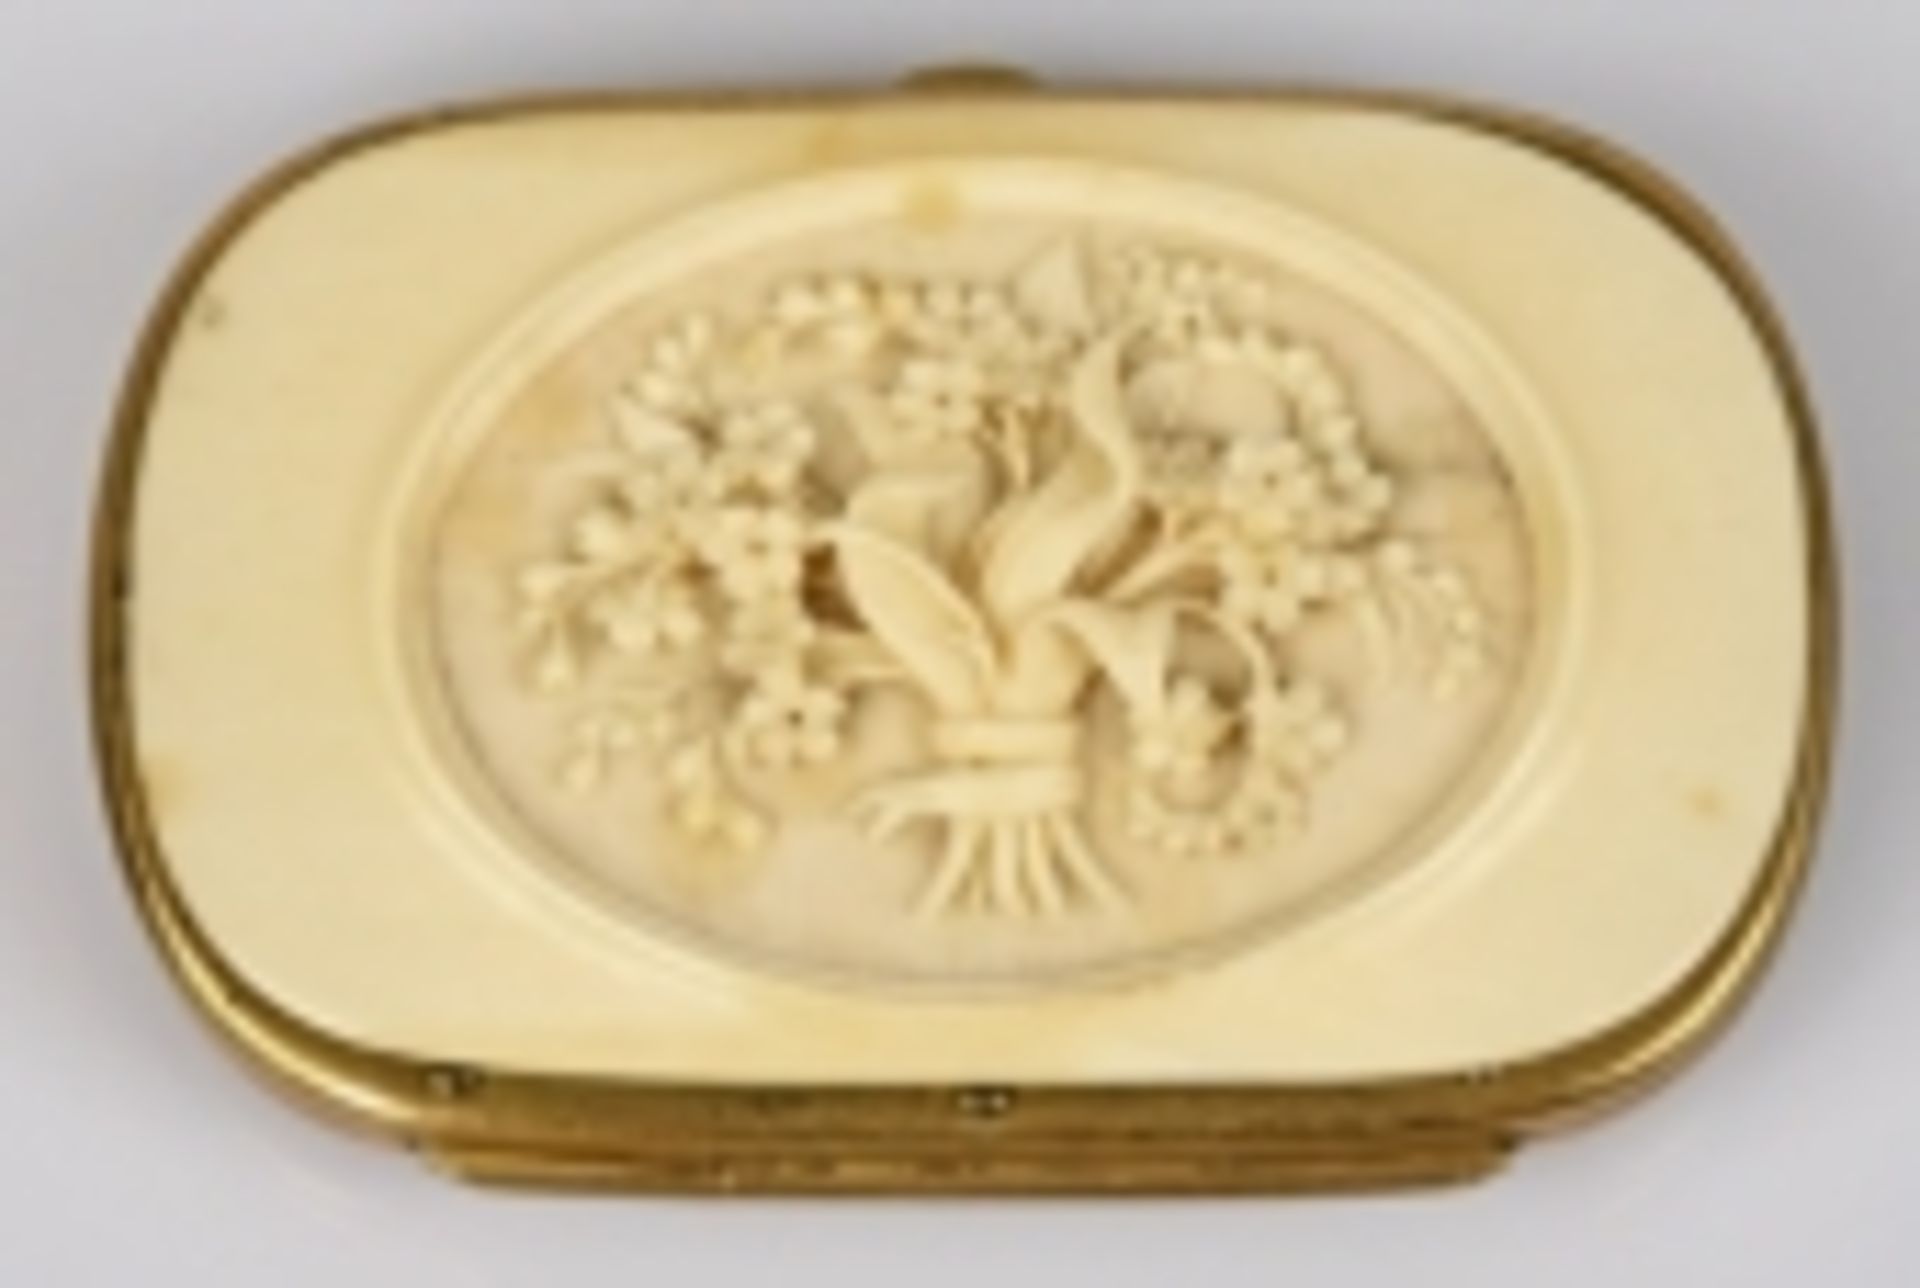 GELDBÖRSE oval, Schauseite dekoriert mit geschnitztem Blumenstrauß in Bein, Rückseite ebenfallsmit